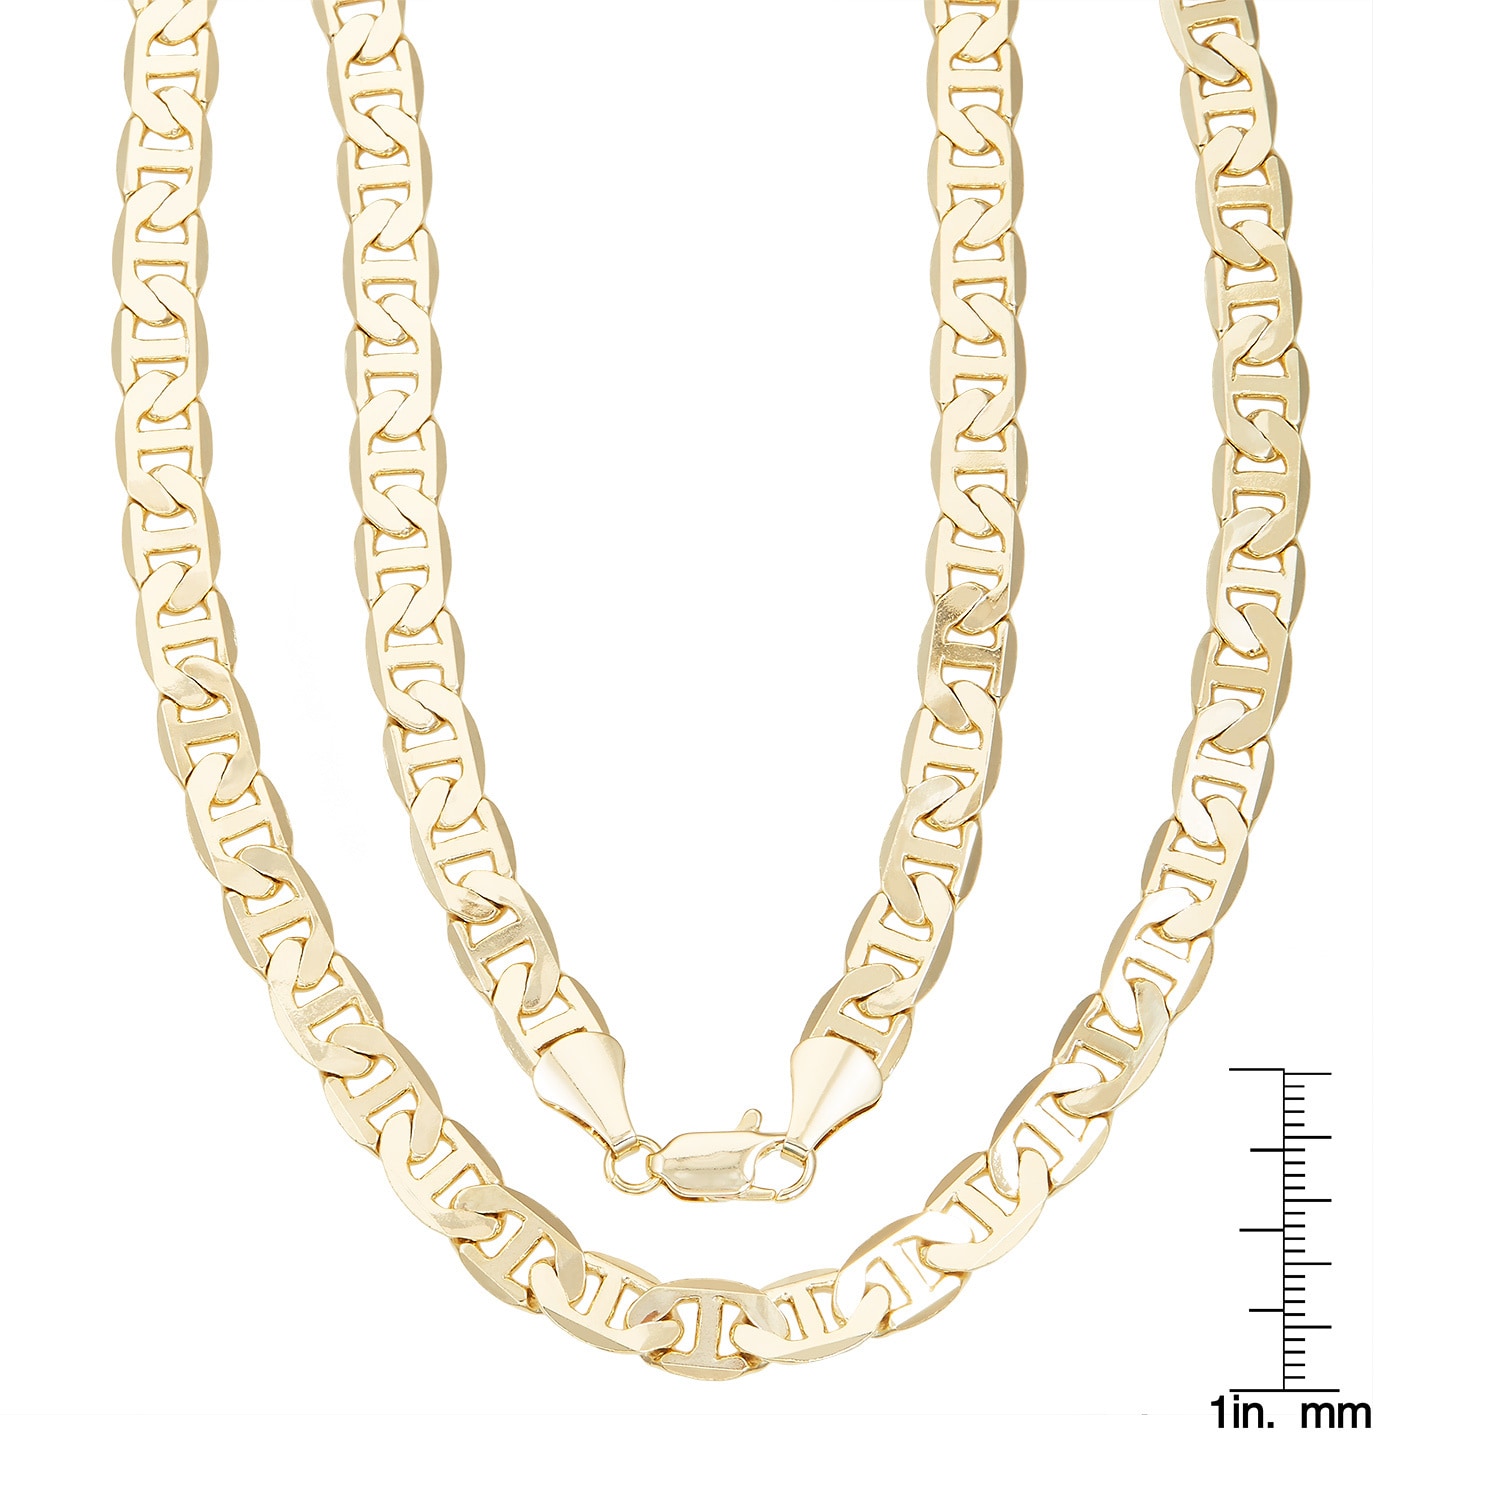 14 karat gold gucci chain